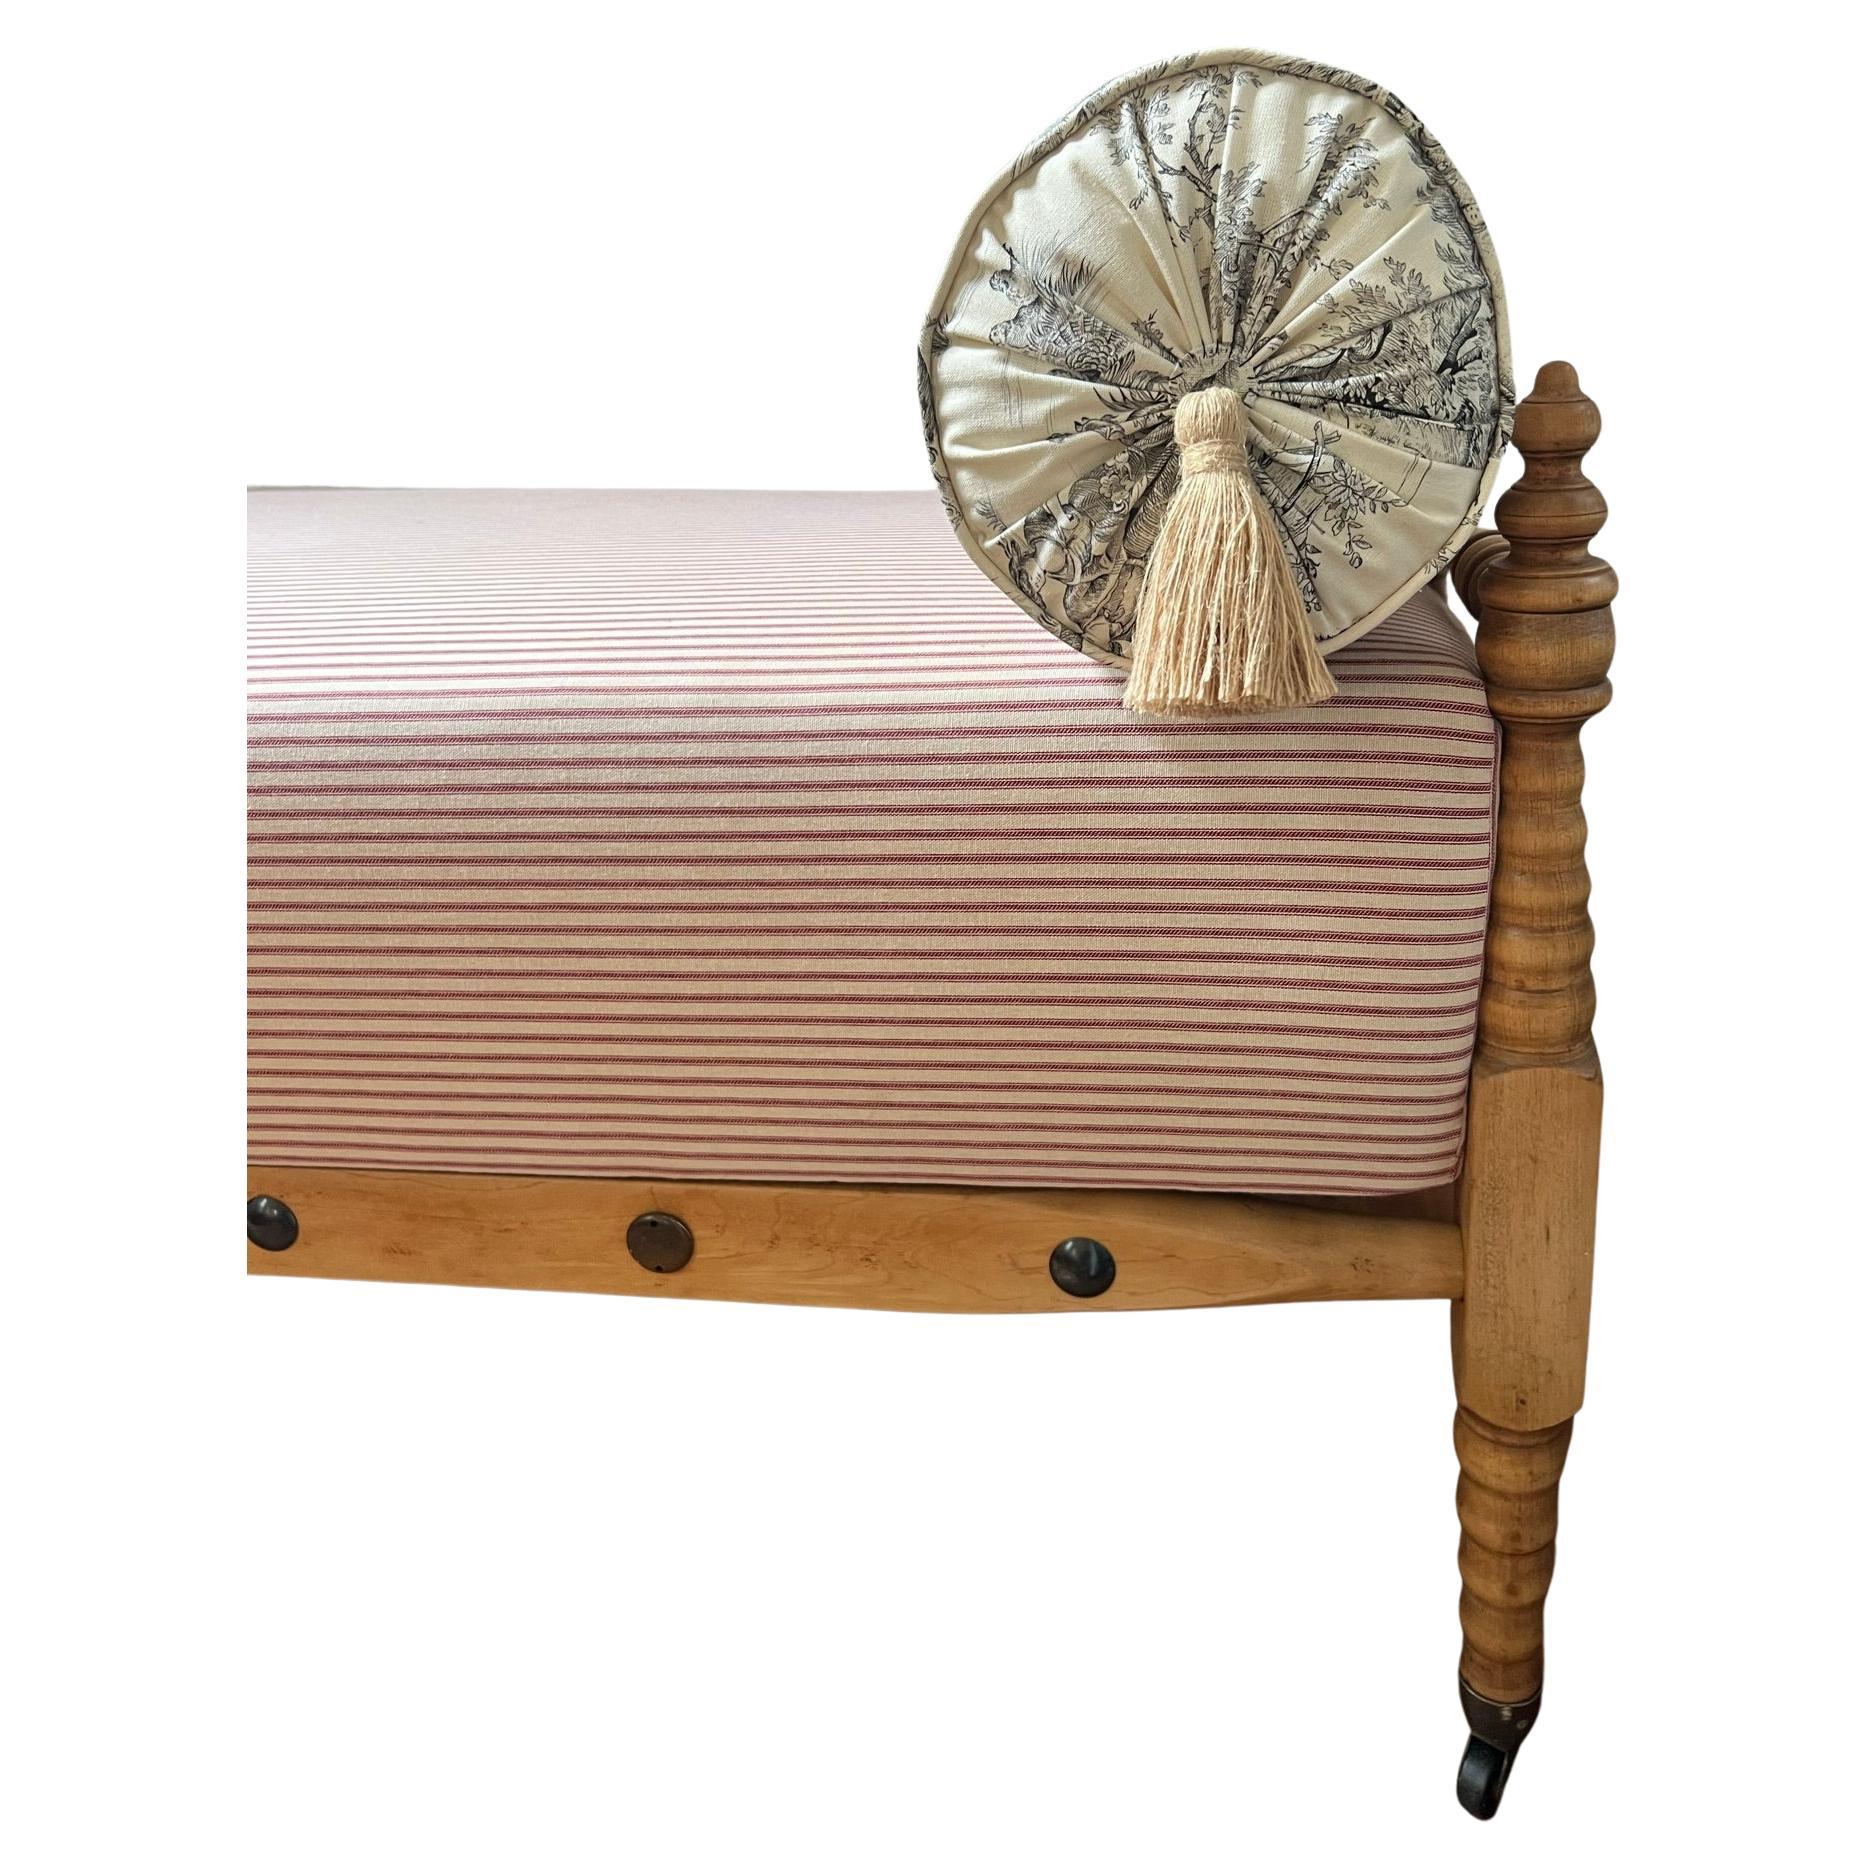 Ce lit de jour sur roulettes est entièrement restauré et retapissé. Cadre en bois nouvellement remis à neuf et nouveau revêtement à rayures en coutil avec assise à ressorts.